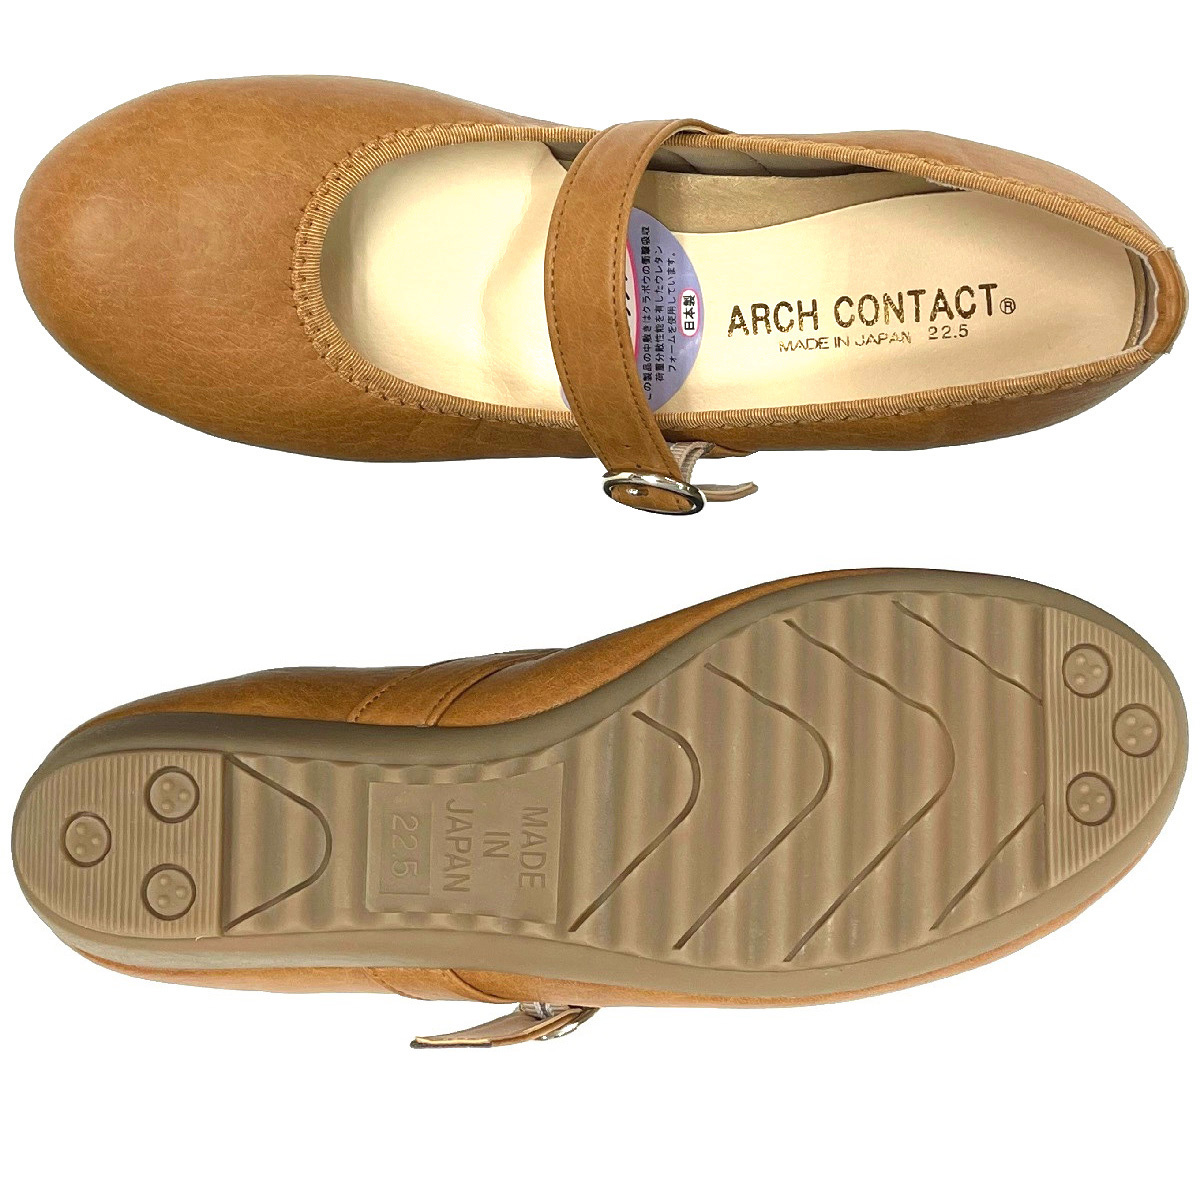  No.39075 キャメル 22.5cm ARCH CONTACT アーチコンタクト ストラップ パンプス 軽量 ウェッジソール ローヒール 低反発 クッション 靴の画像4